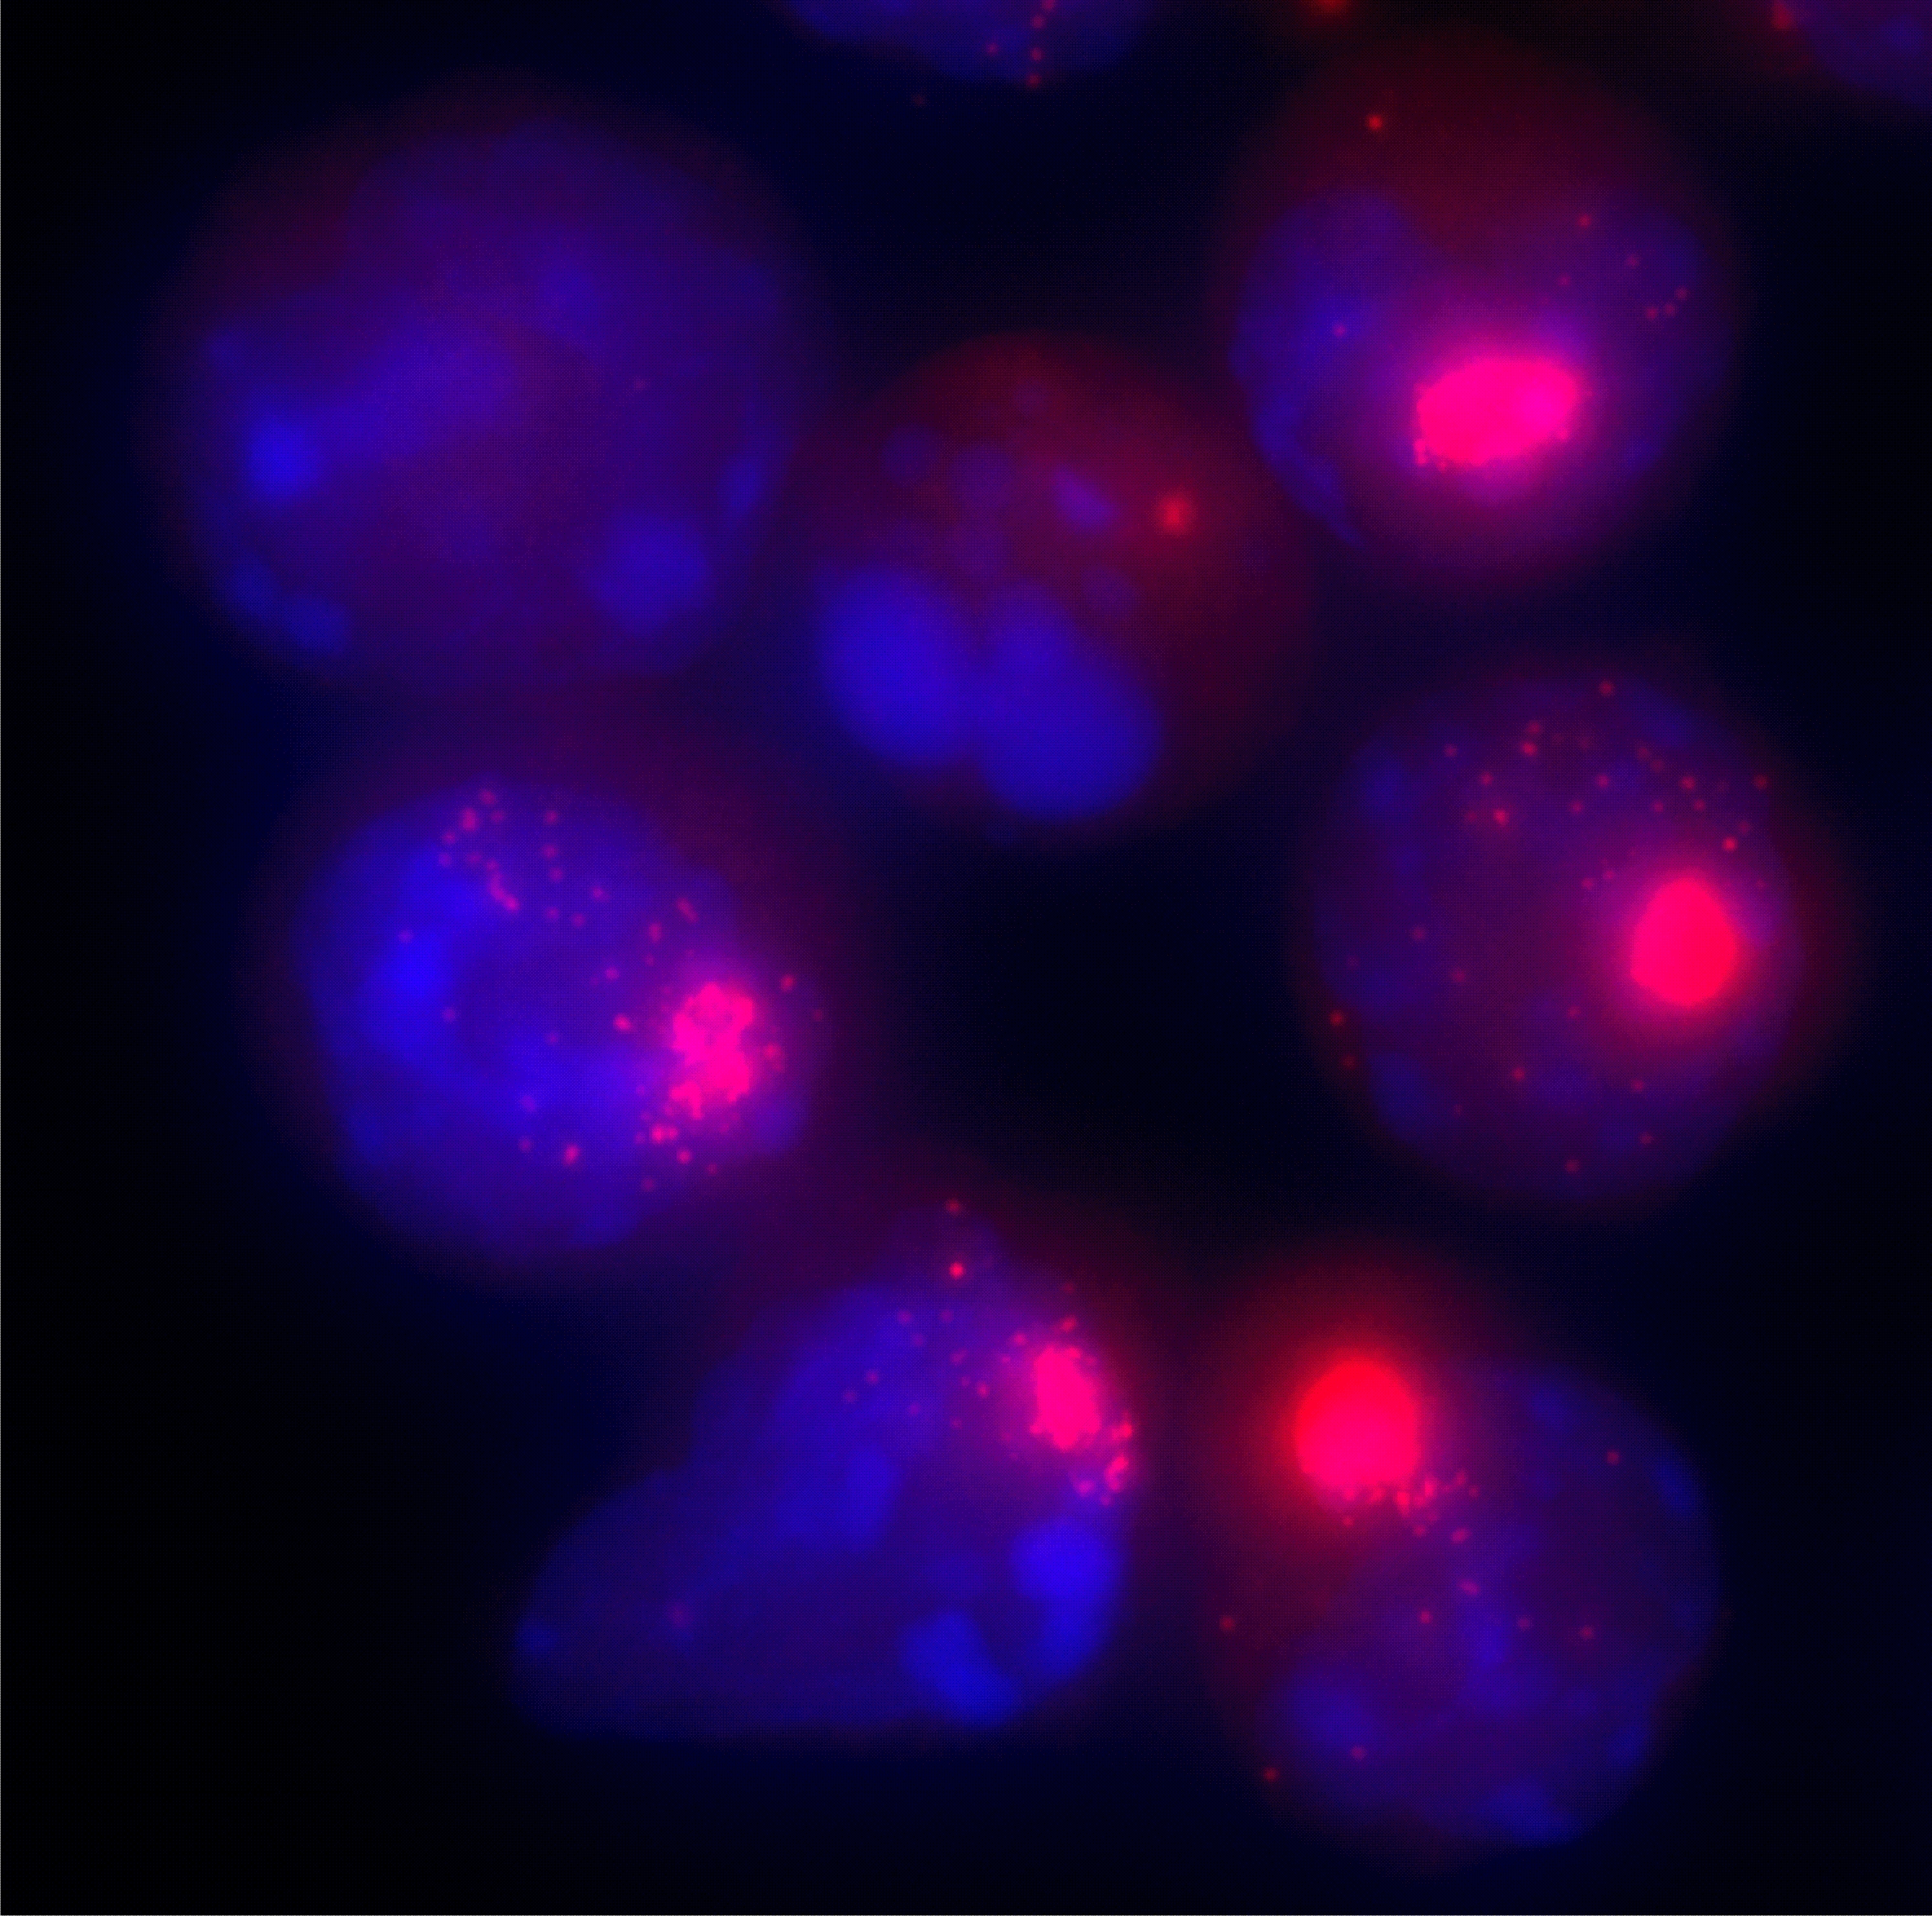 Zellkerne von weiblichen Zellen © Verena Mutzel / Max-Planck-Institut für molekulare Genetik